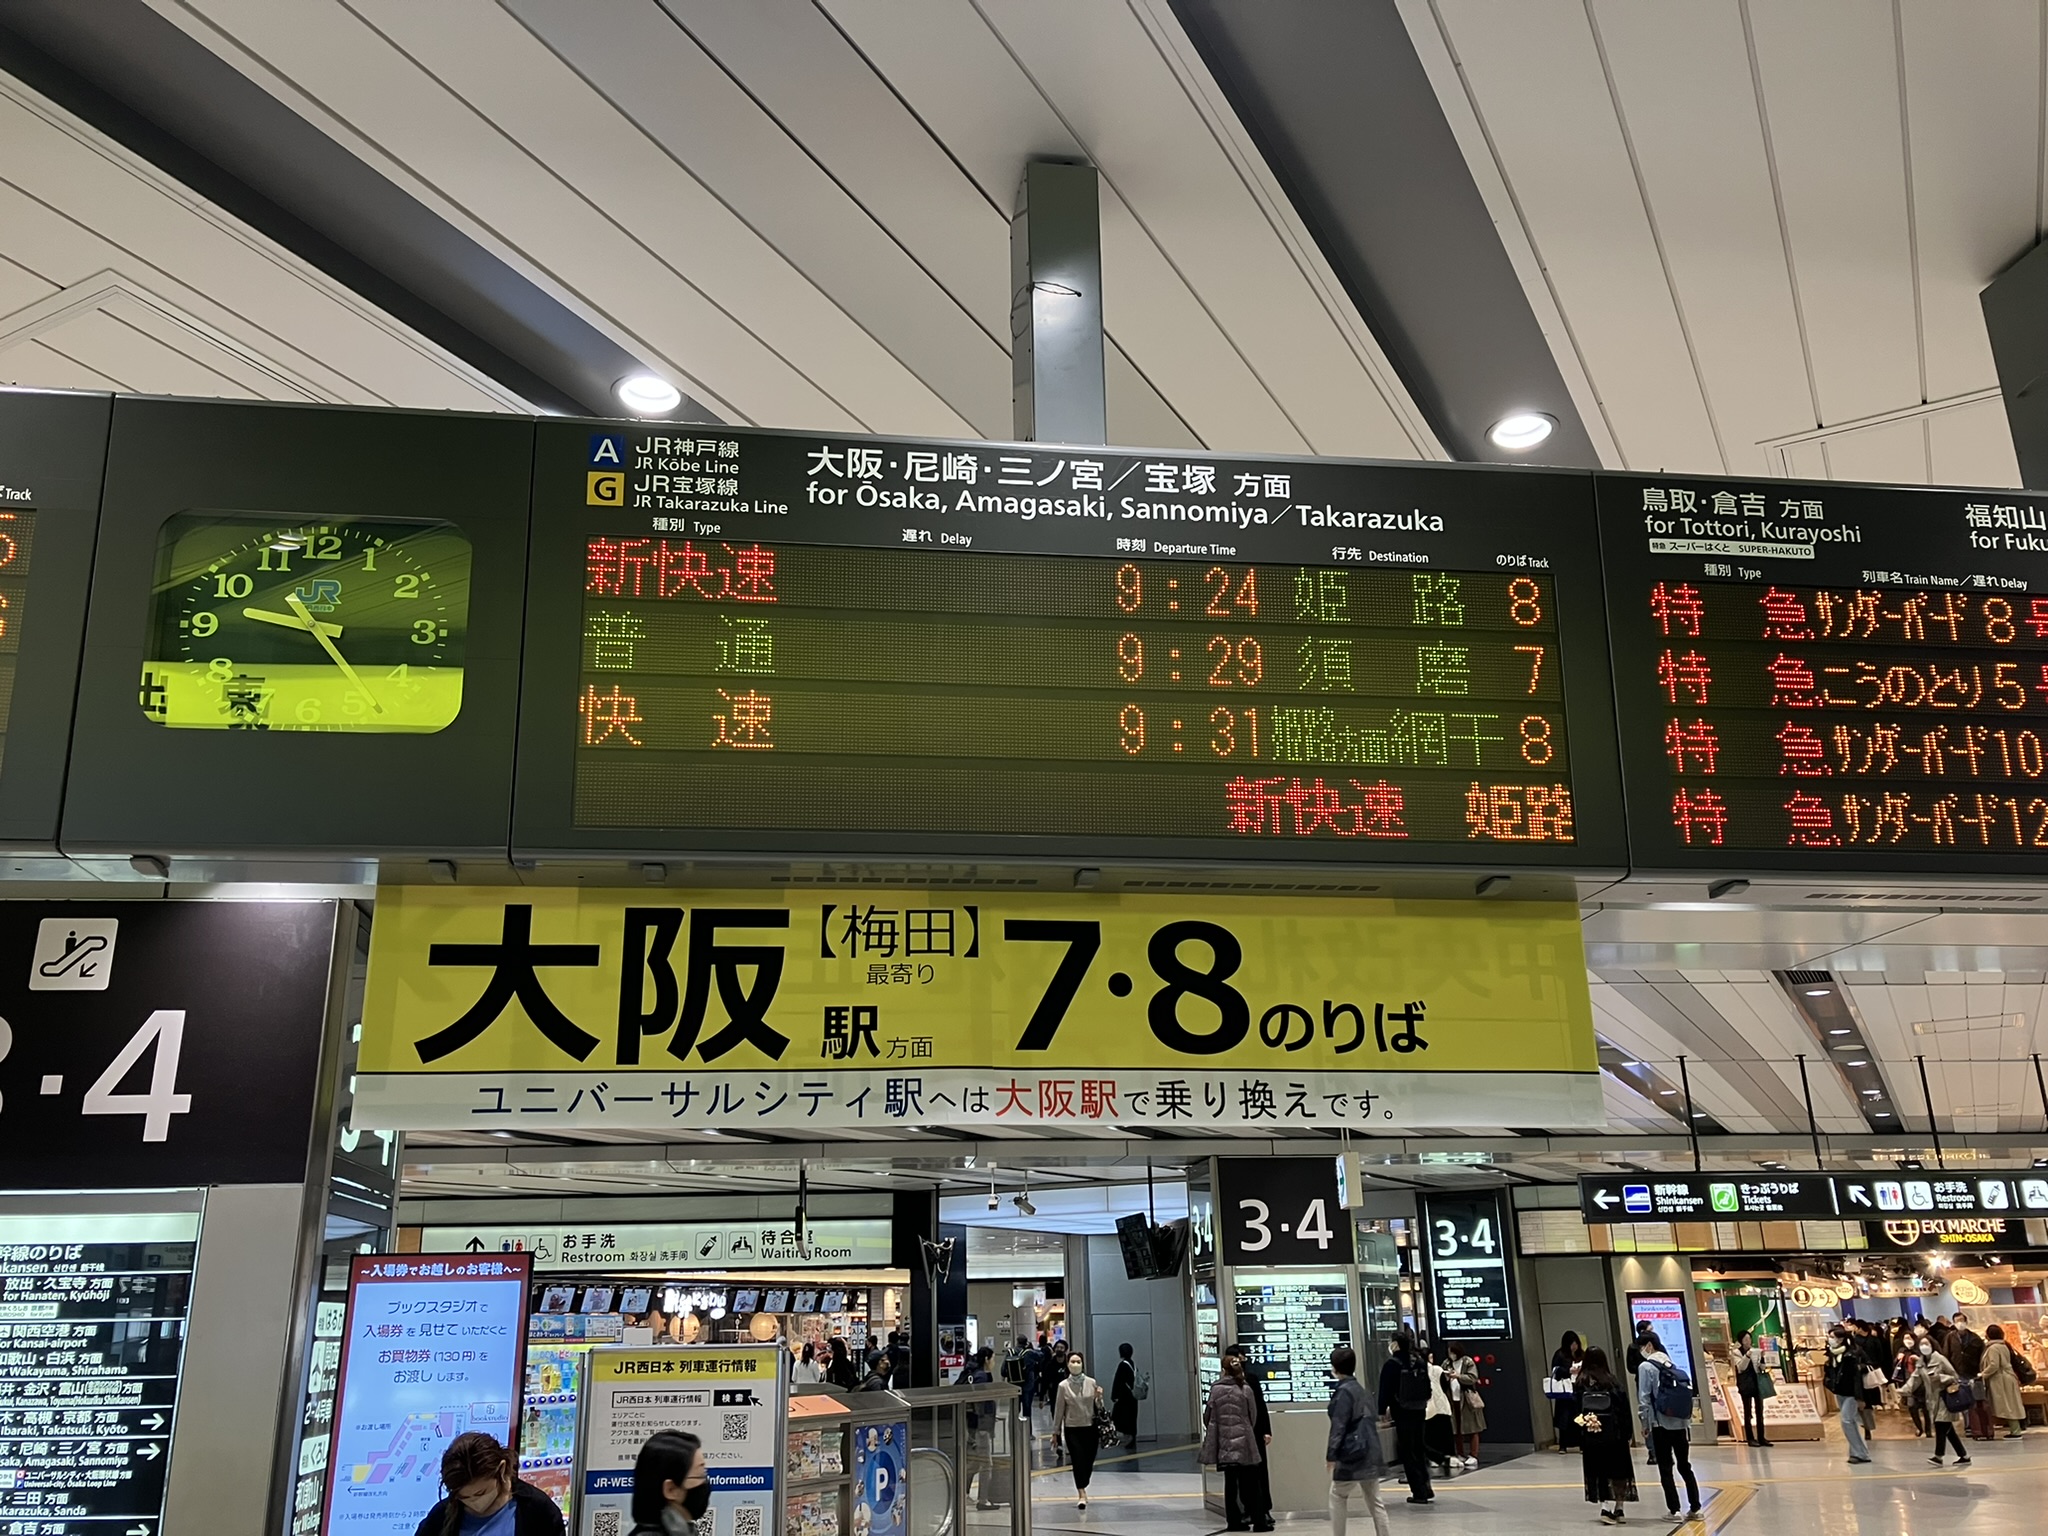 Shin-Osaka station